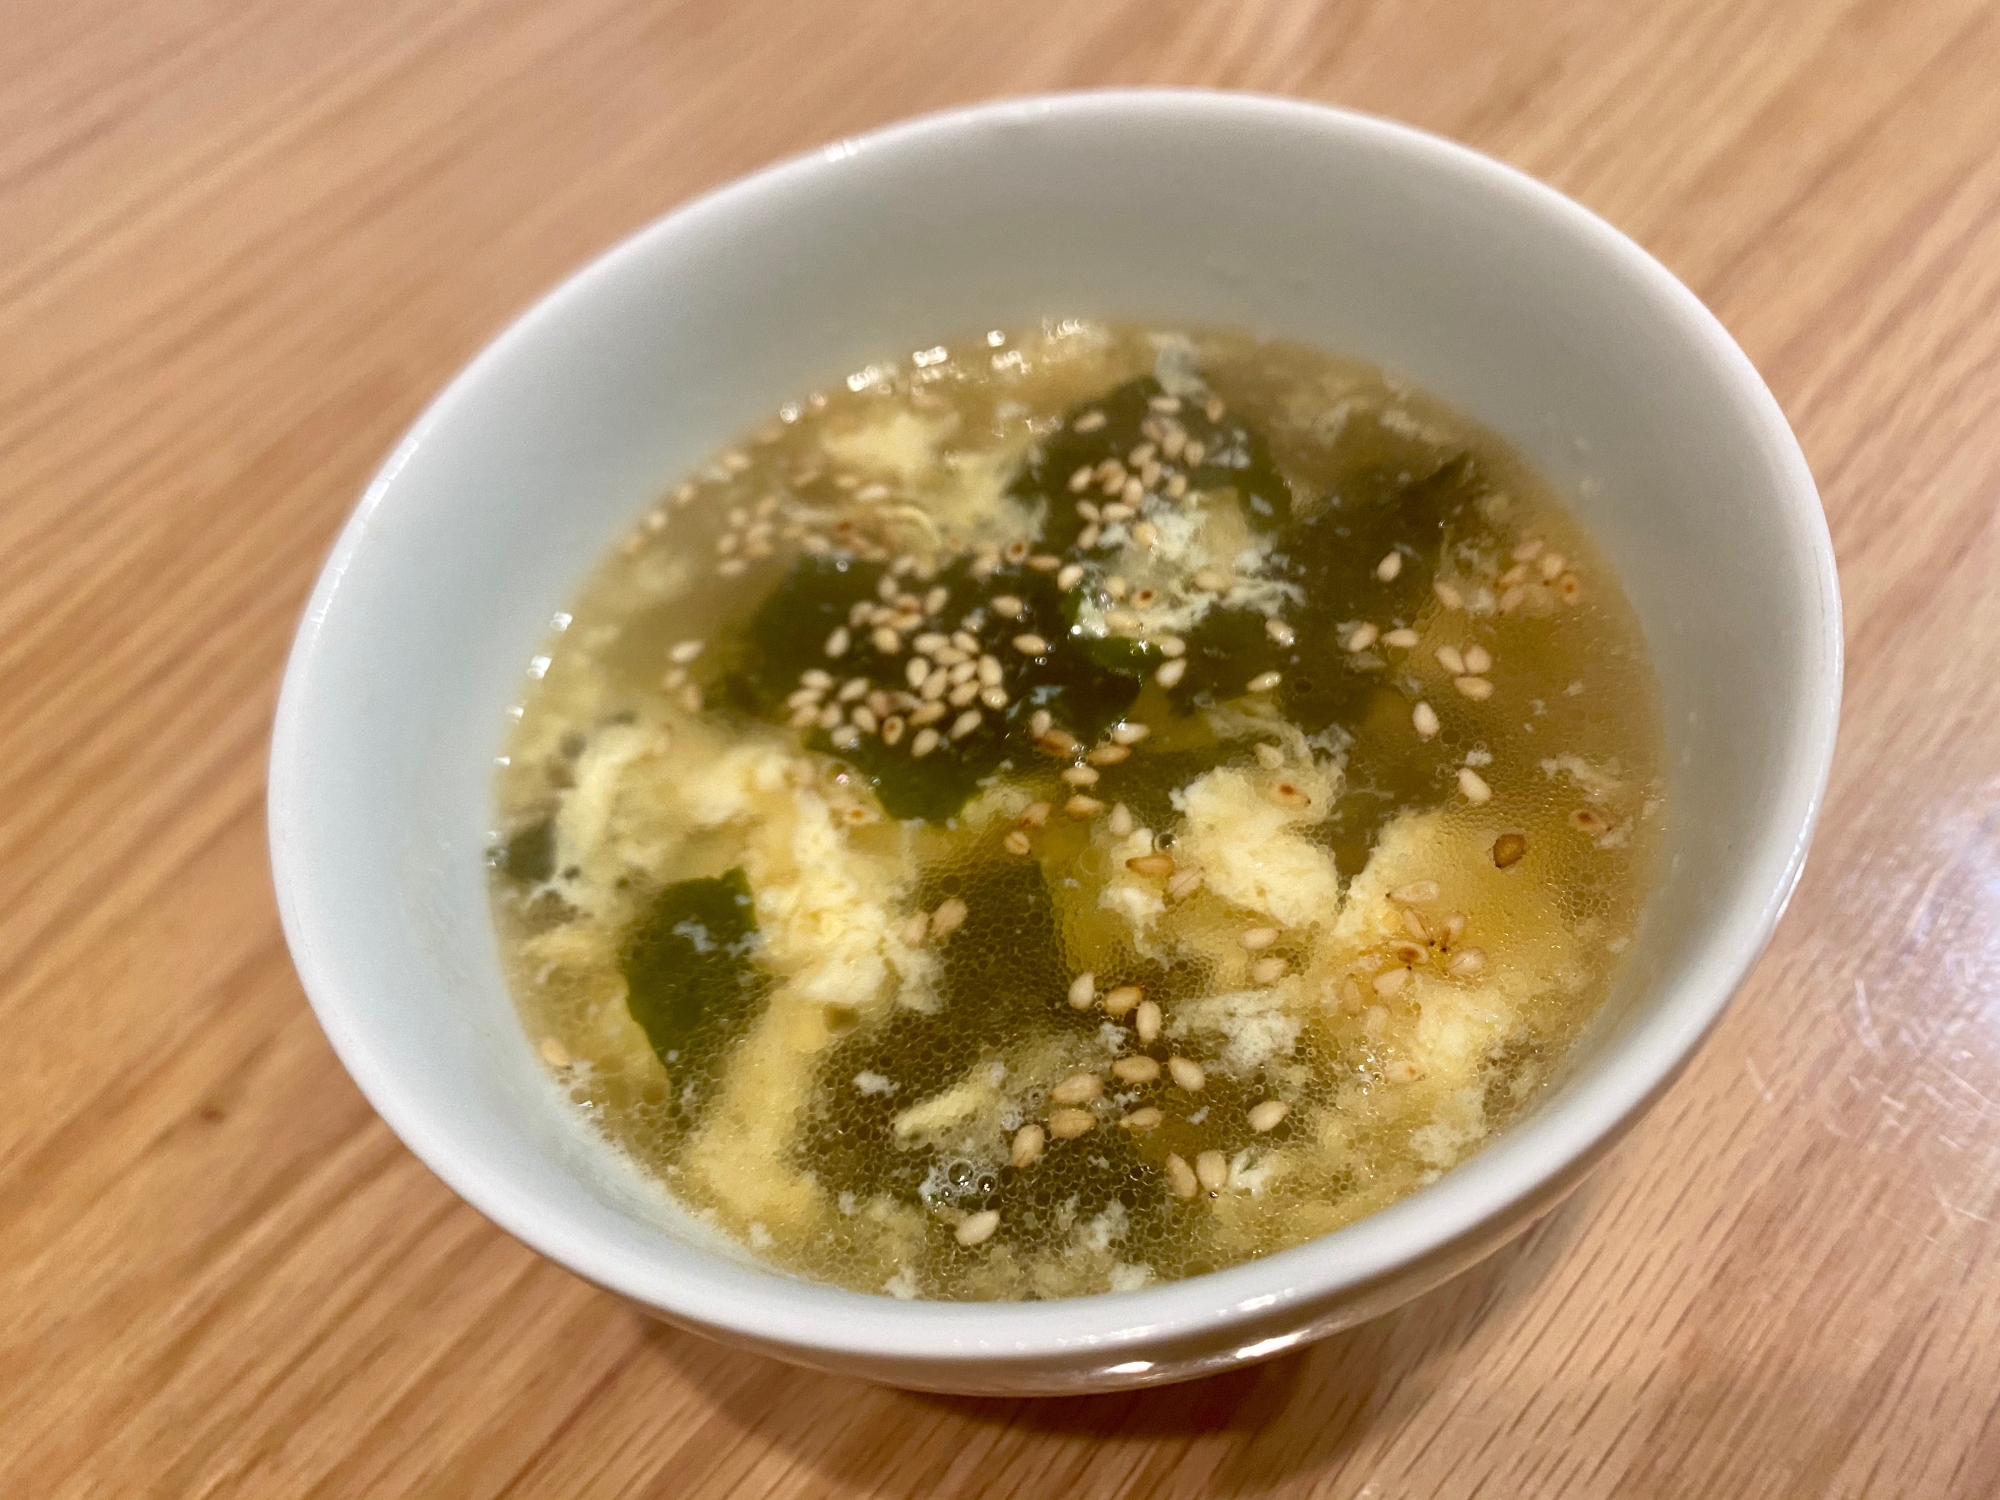 ワカメとふわふわ卵の中華スープ